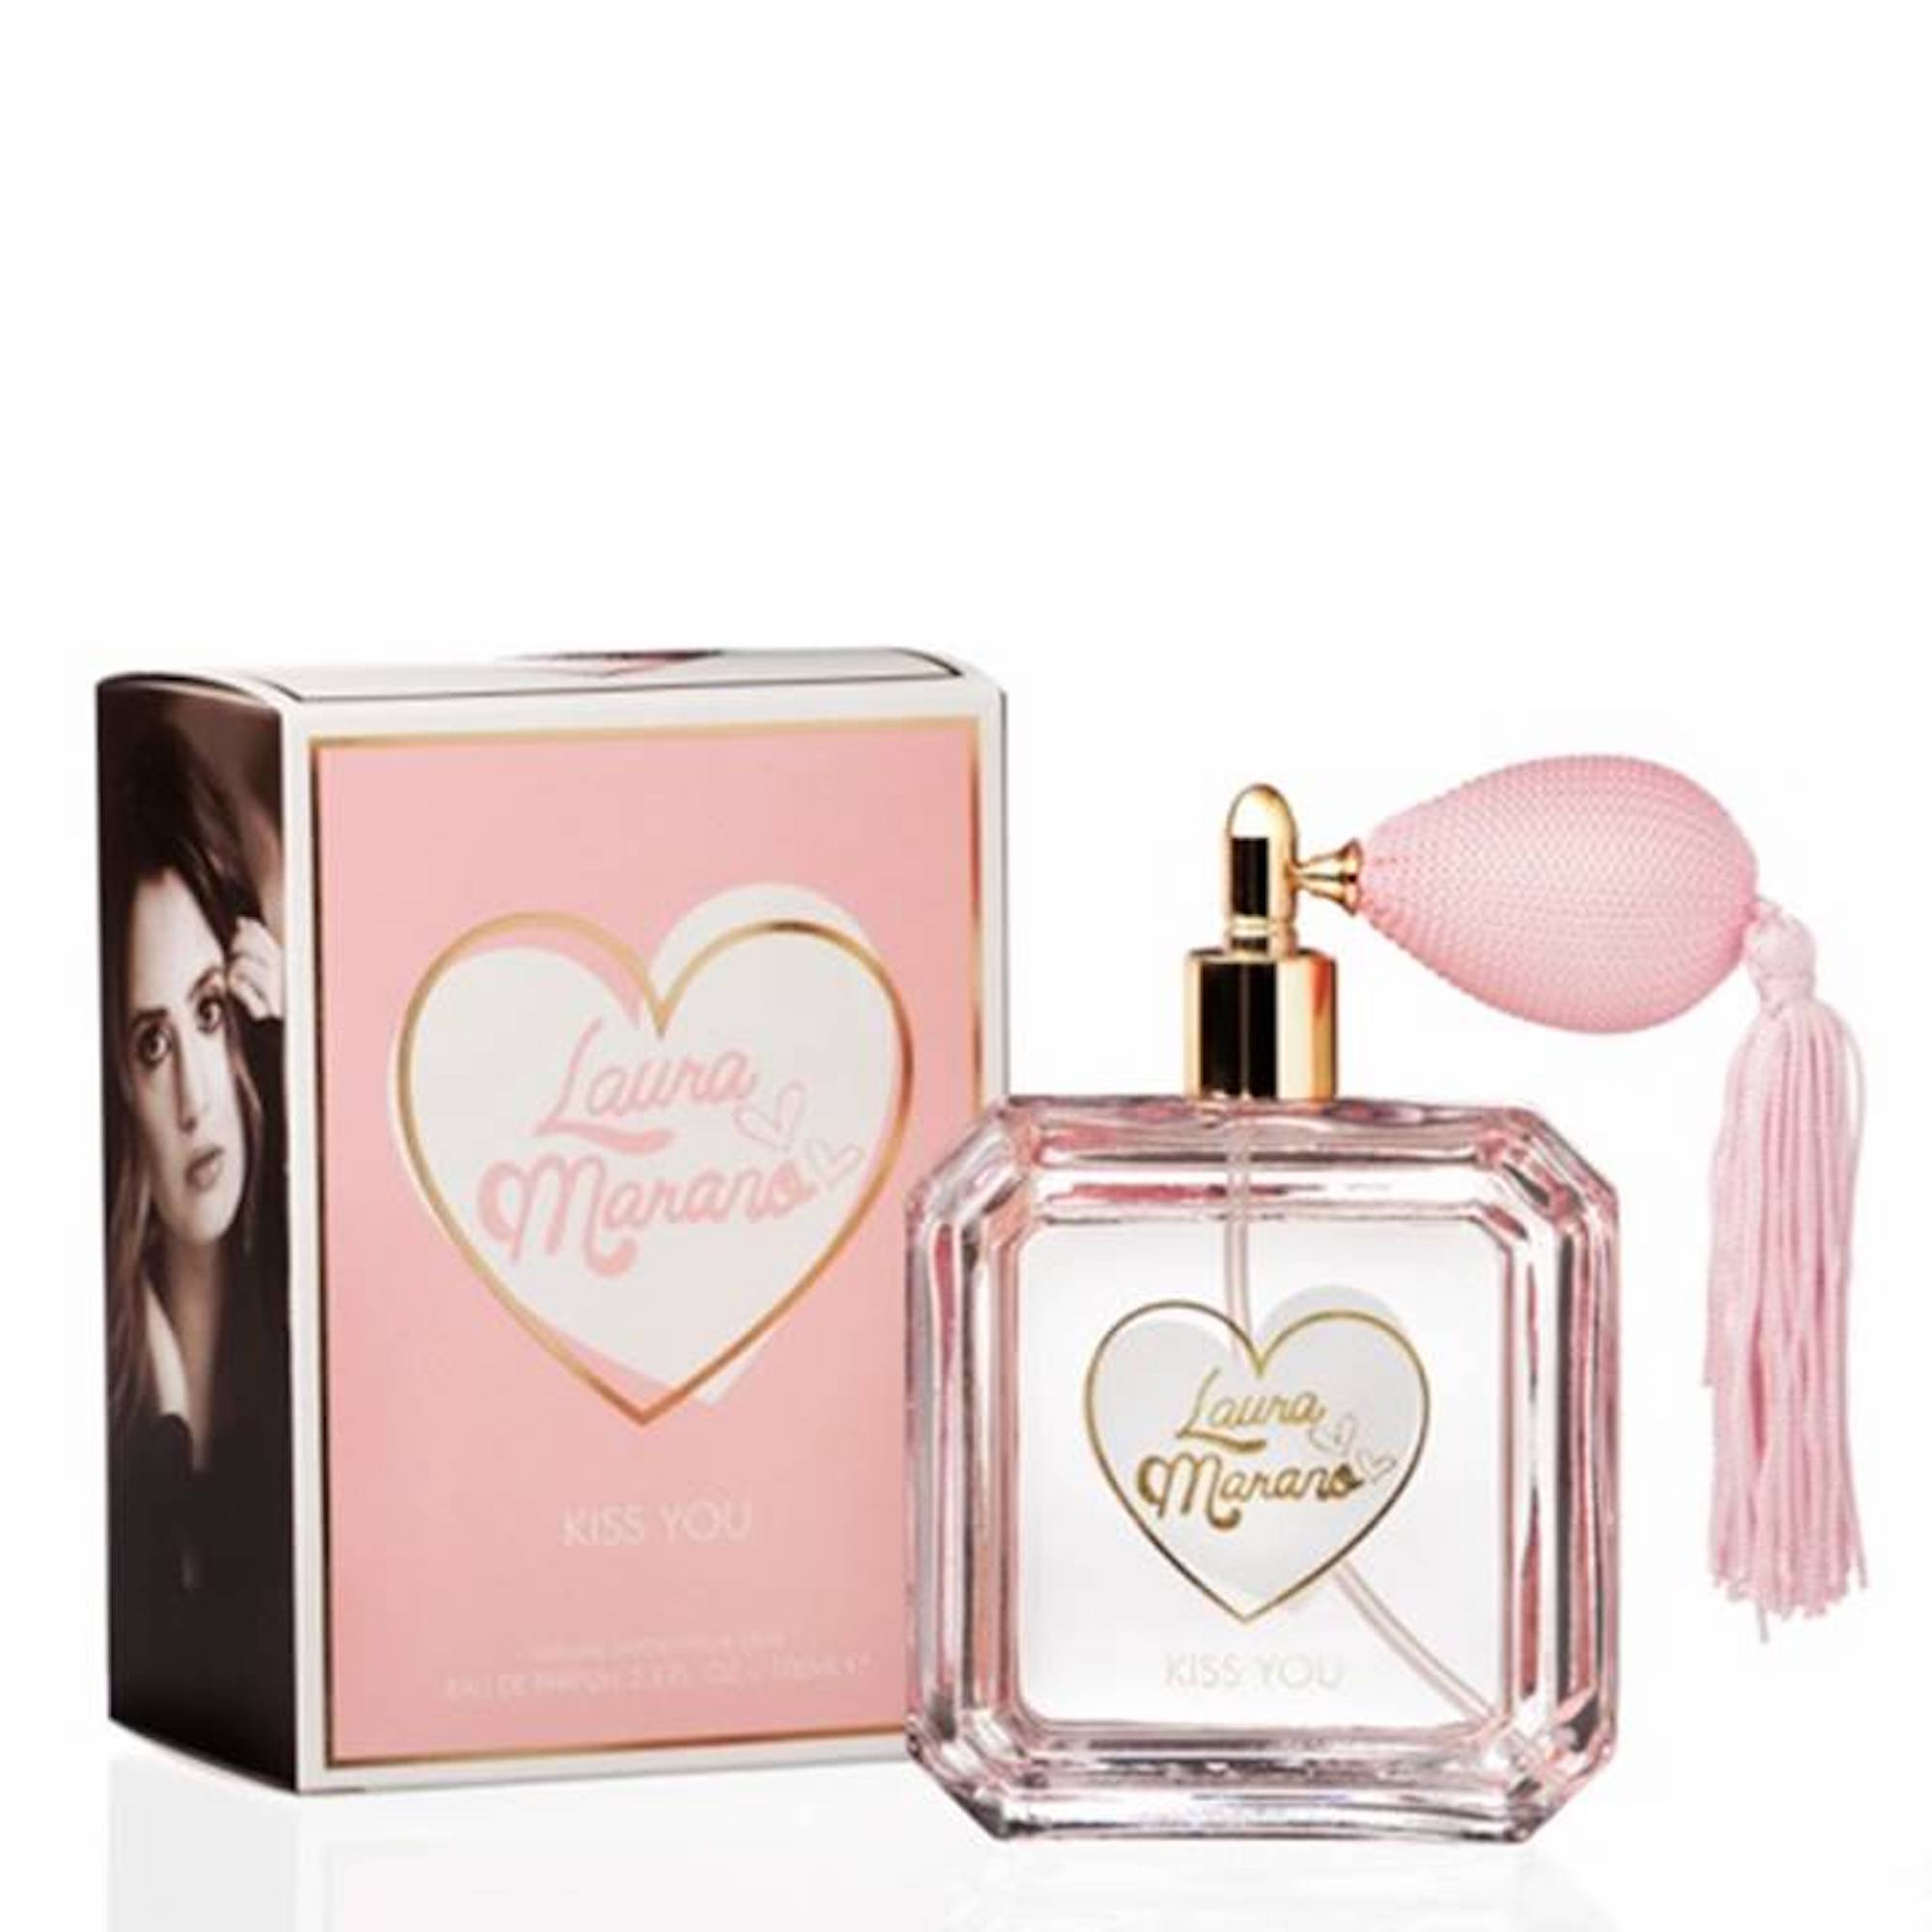 Laura Marano's new fragrance